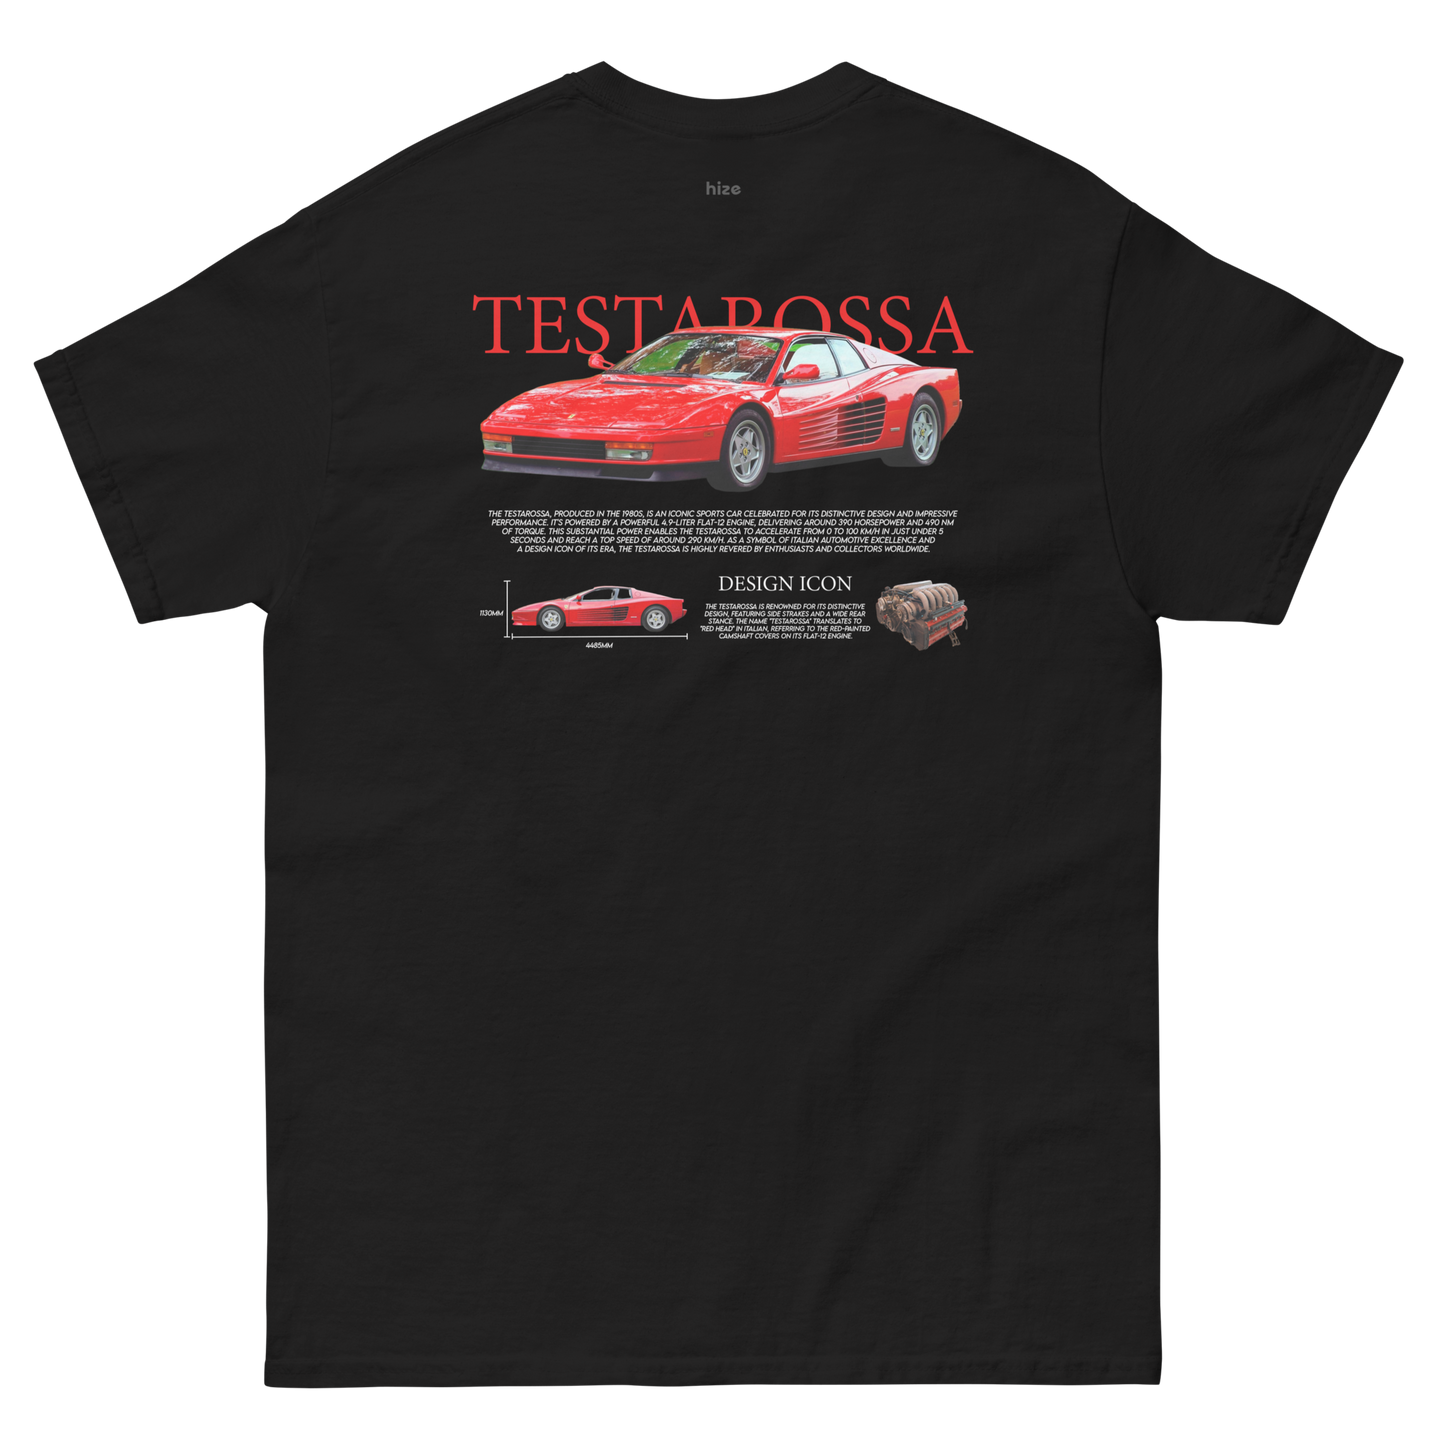 Testarossa T-shirt